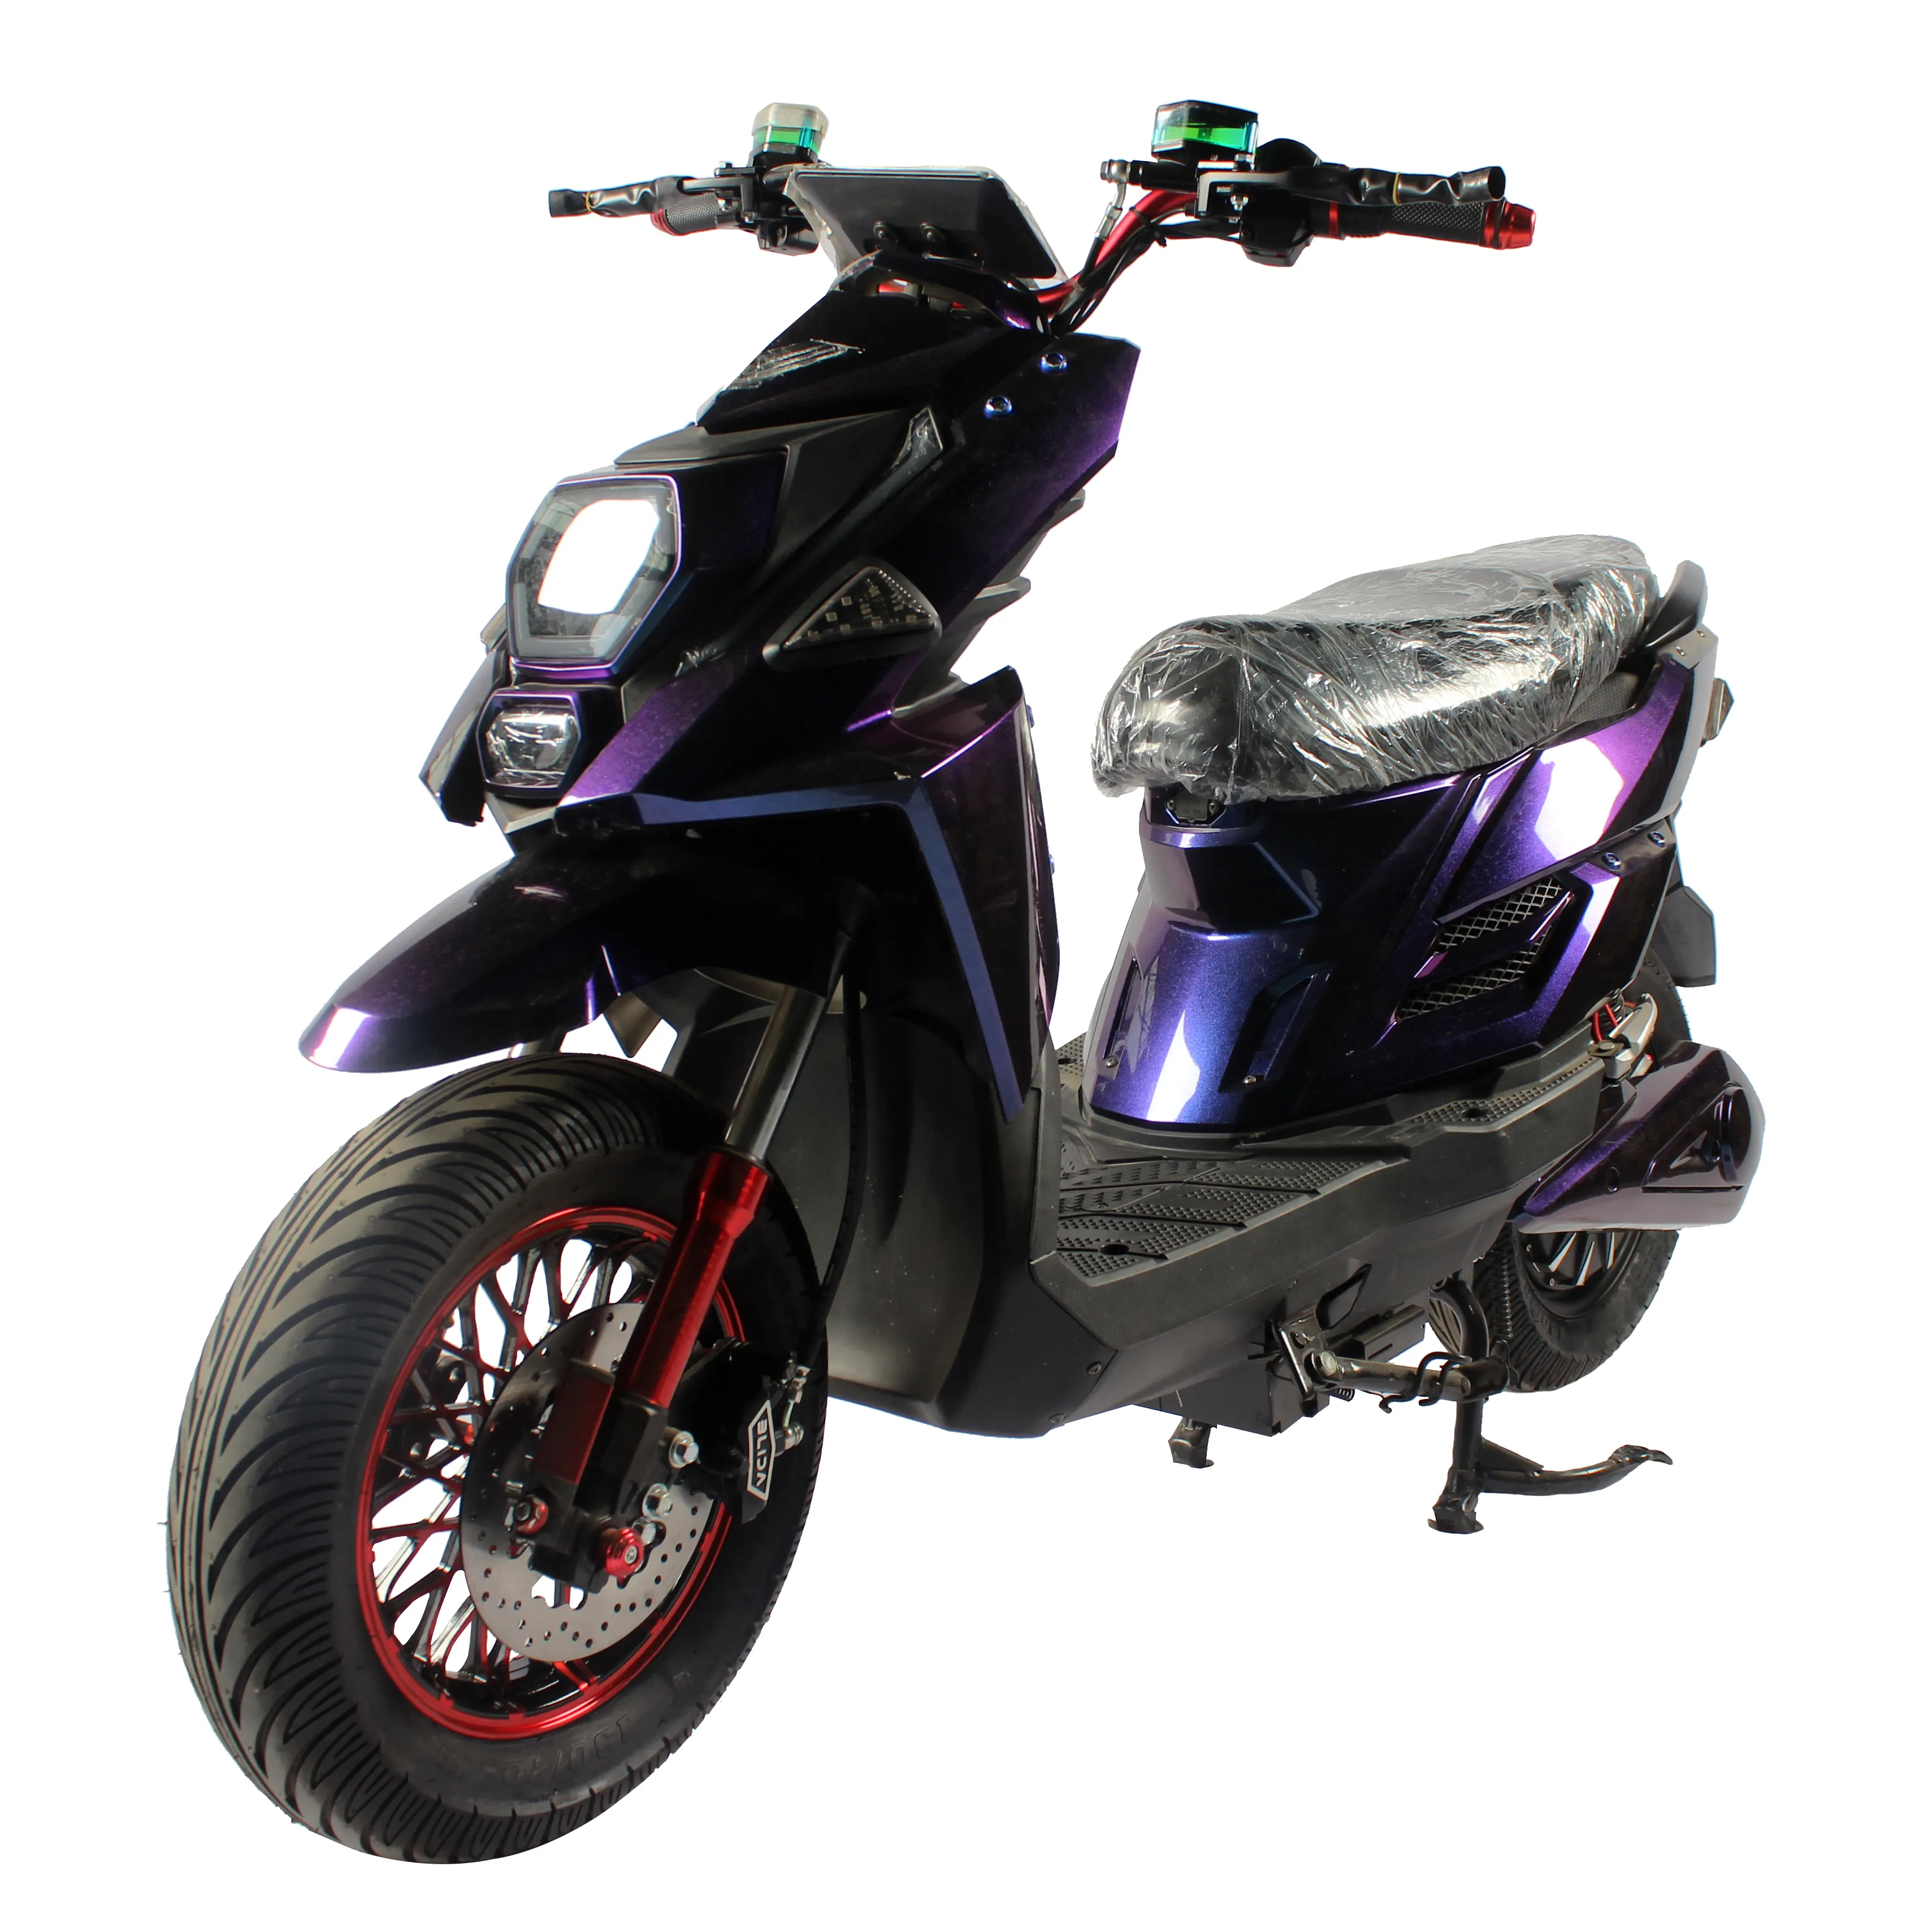 सस्ते वयस्क 1500W मोटर क्लासिक मॉडल इलेक्ट्रिक मोटरसाइकिल वयस्क उपयोग 2-पहिया ई बाइक